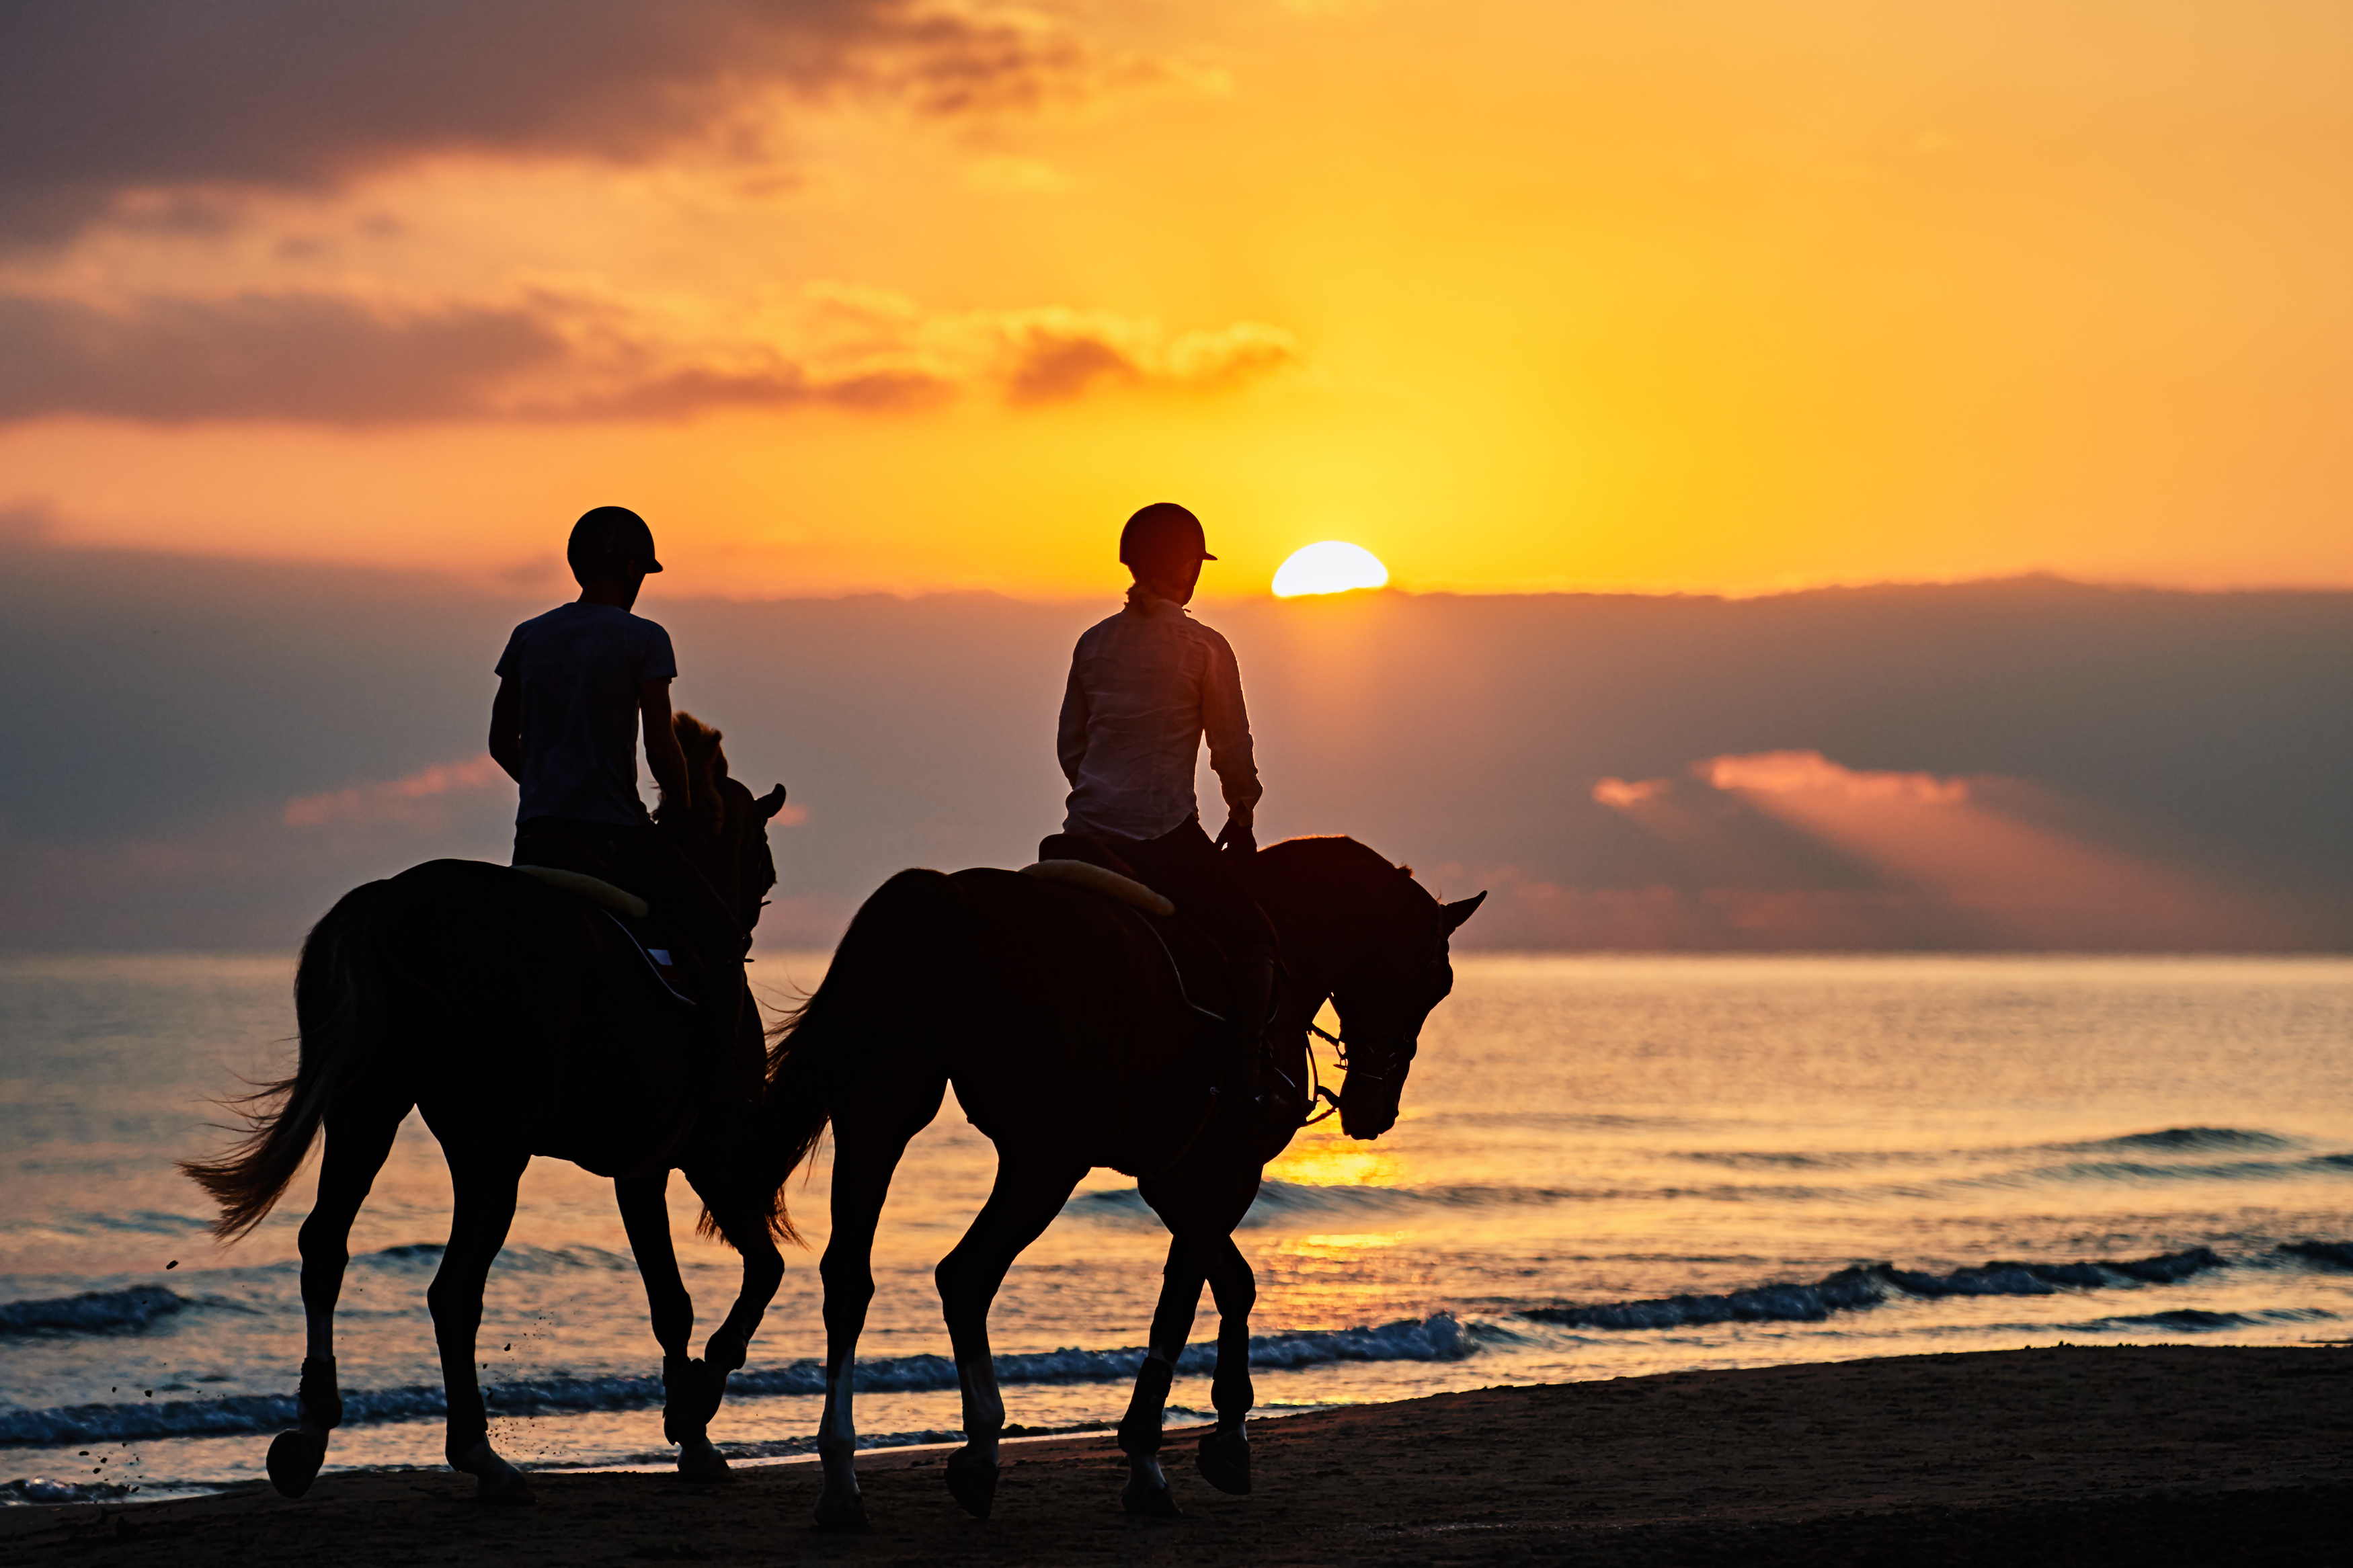 Une balade à cheval au bord de l’eau en Corse Titre de l’image : moby_balade-a-cheval Description de l’image : Deux personnes qui font une balade à cheval au bord de l’eau et avec un coucher de soleil.